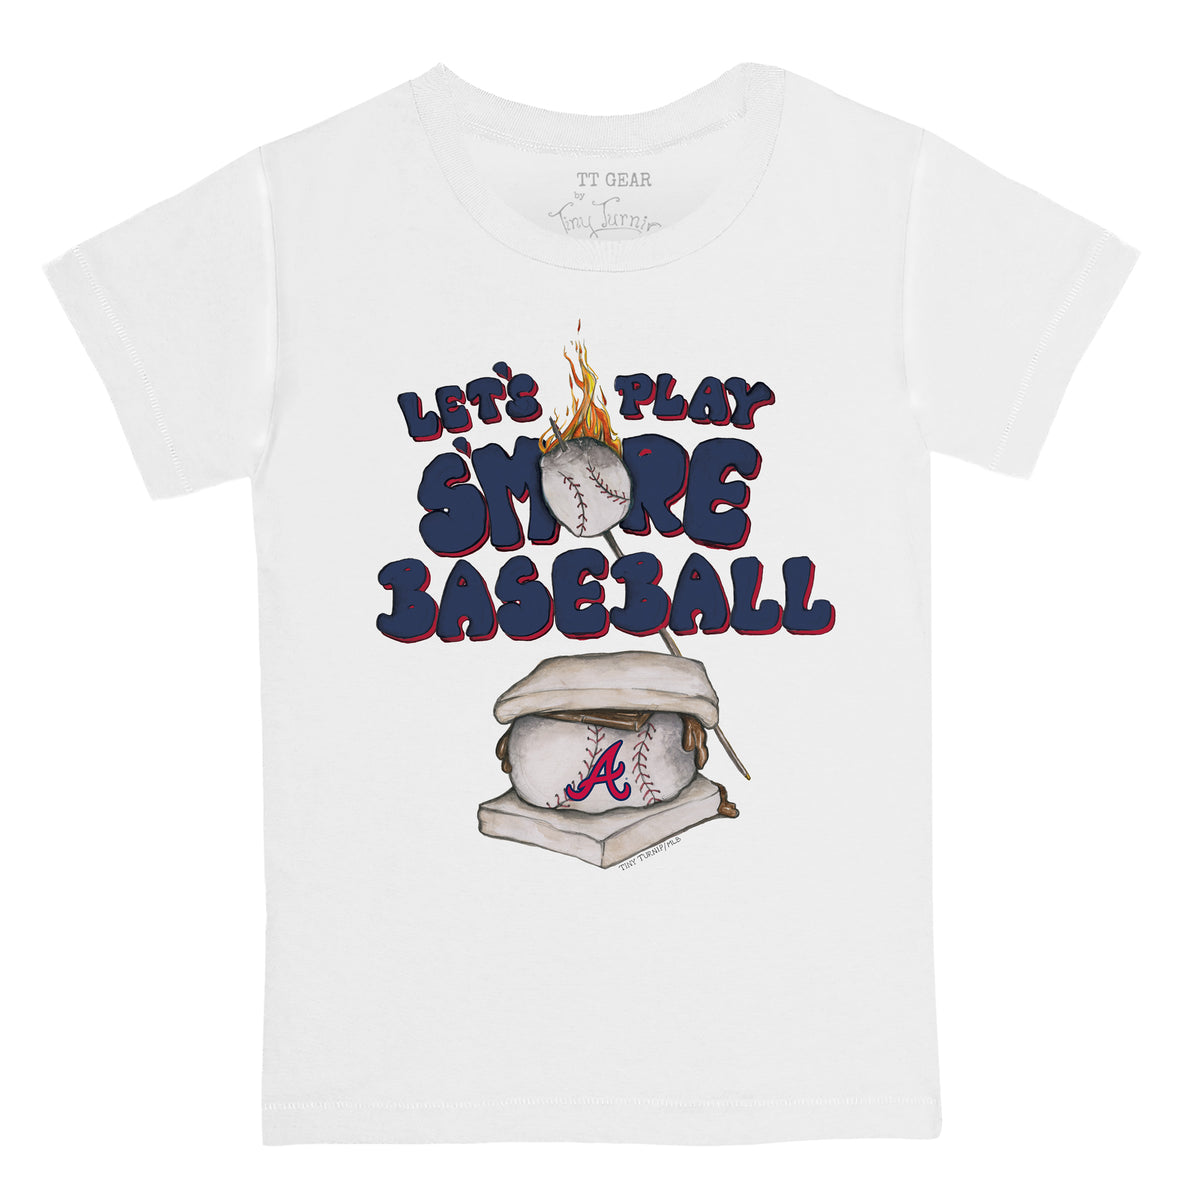 Cleveland Indians T-Rex throw a baseball shirt - Kingteeshop